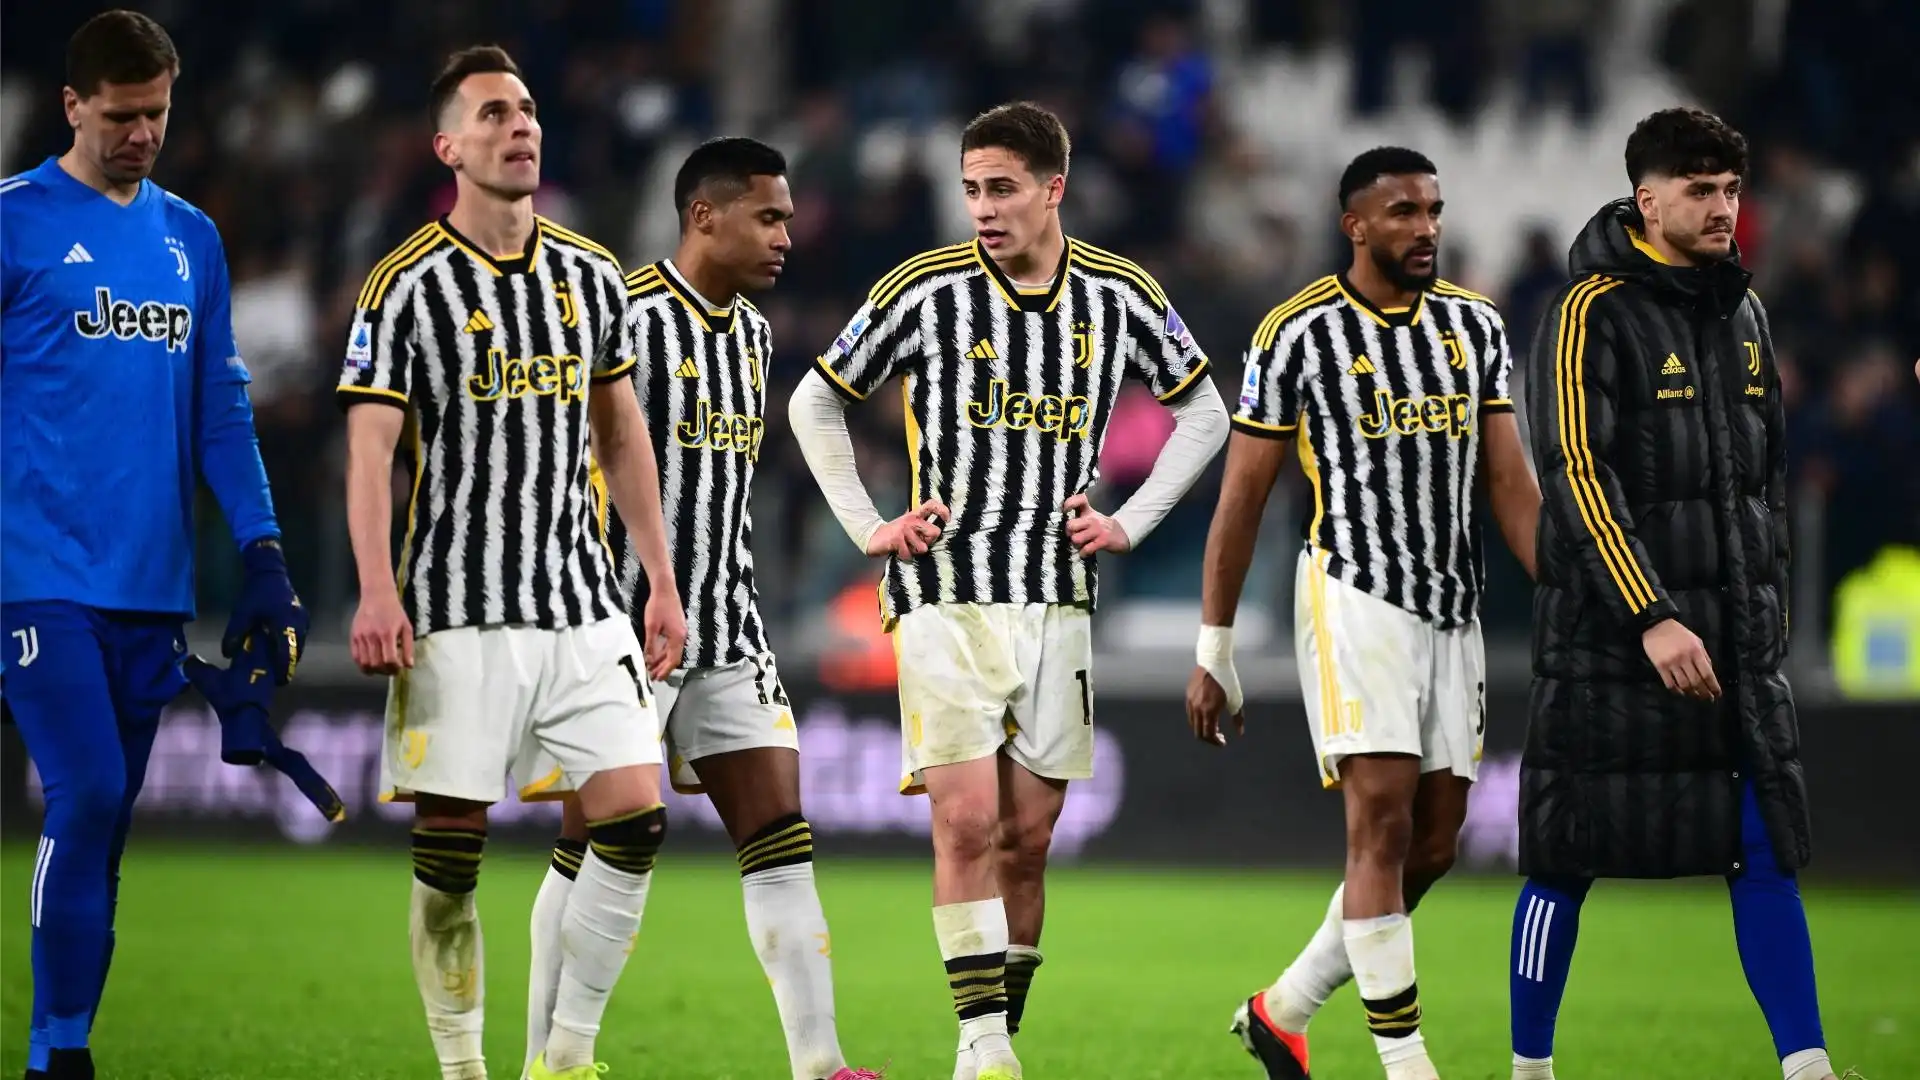 Le ultime uscite della Juventus hanno evidenziato un divario con l'Inter di Inzaghi